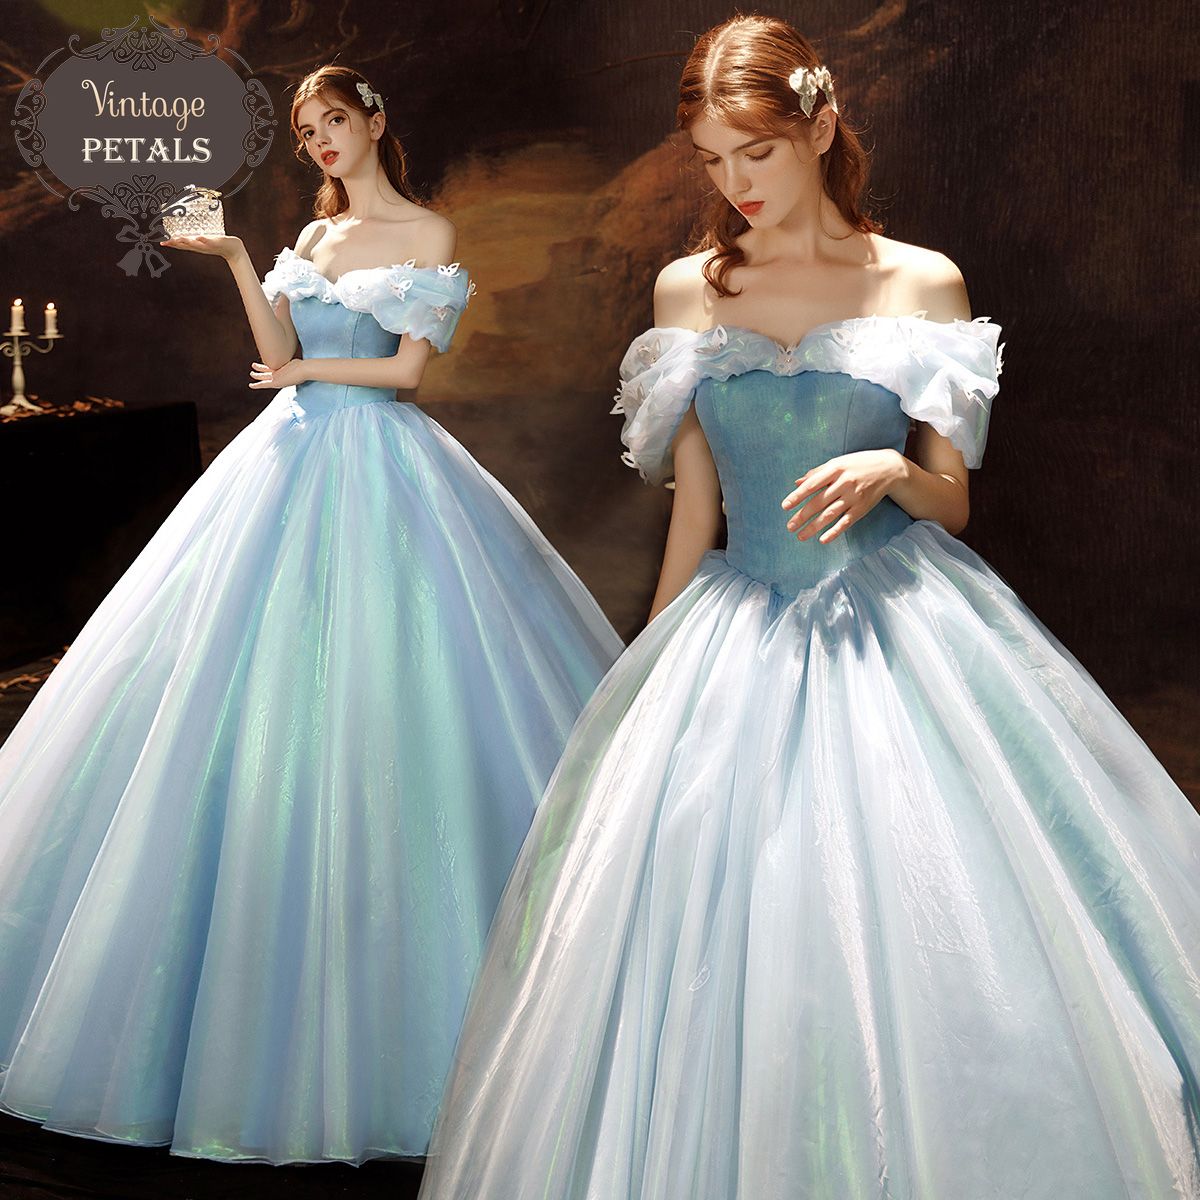 Váy áo cầu kỳ, lộng lẫy trong phim 'Cinderella' - Ngôi sao